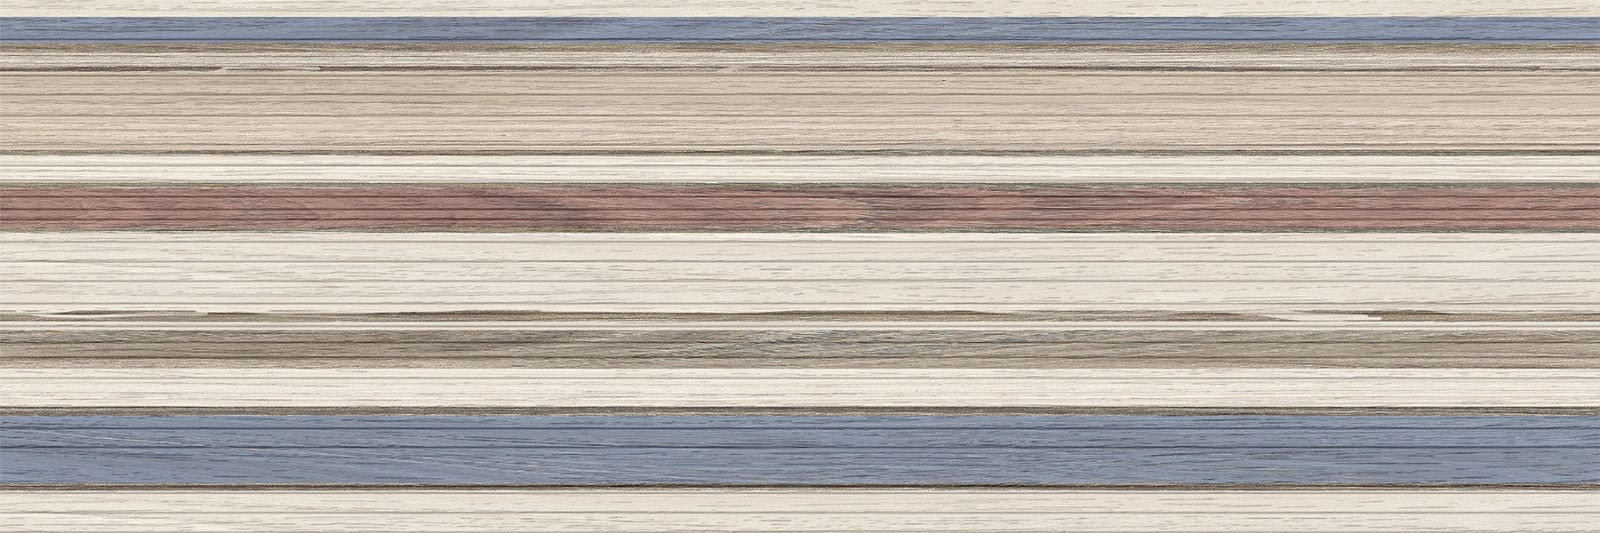 Delacora Timber Range Beige WT15TMG11 253*750 (8 шт в уп/63 м в пал)